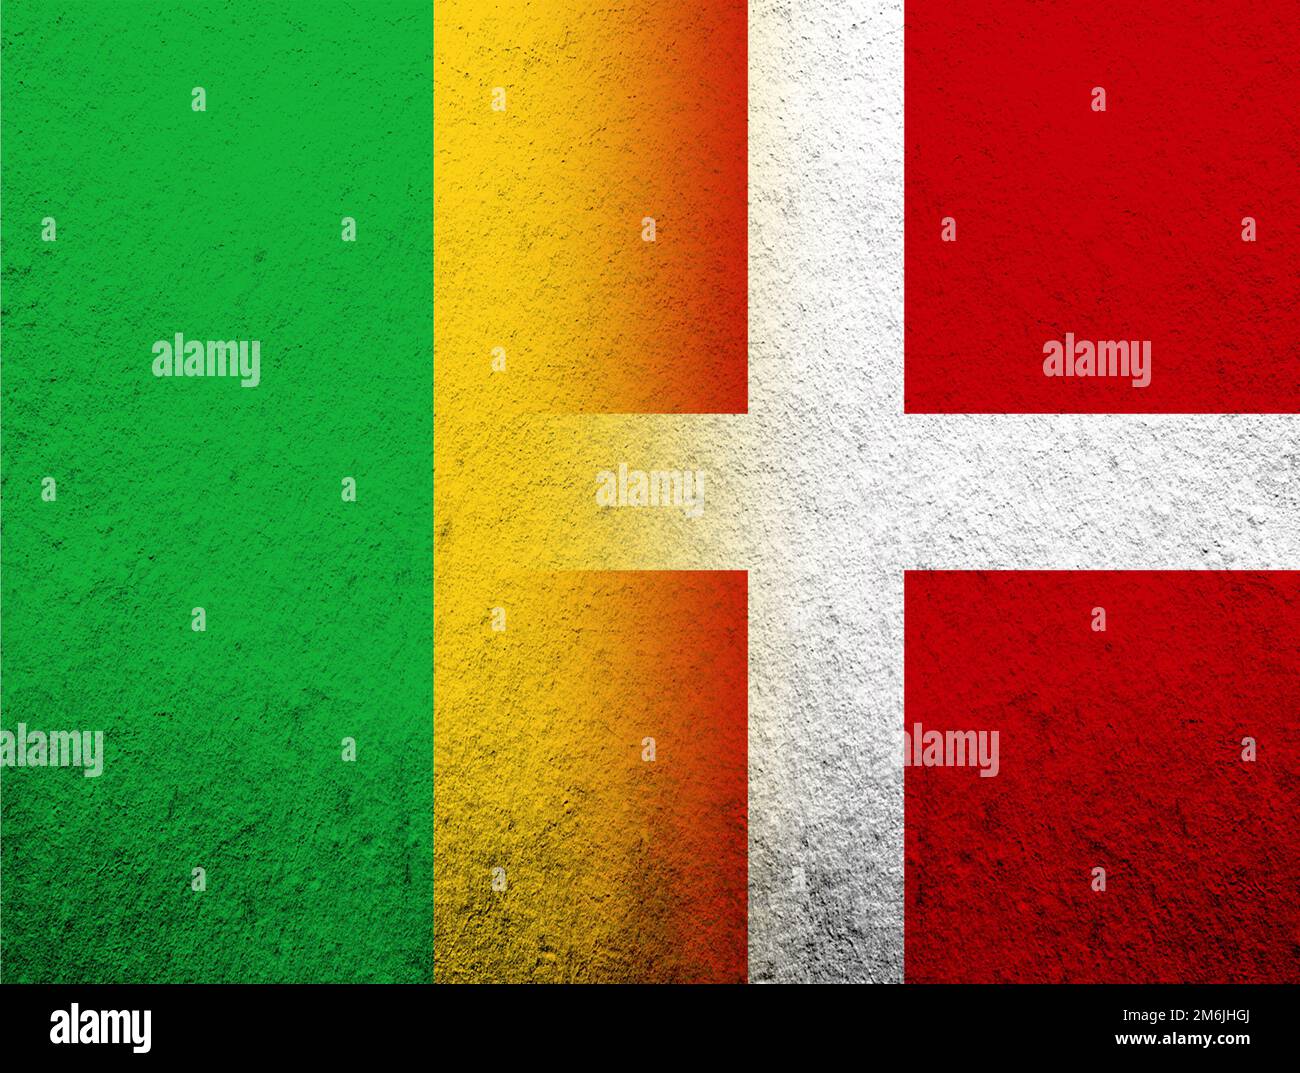 Le Royaume du Danemark drapeau national avec la République du Mali drapeau national. Grunge l'arrière-plan Banque D'Images